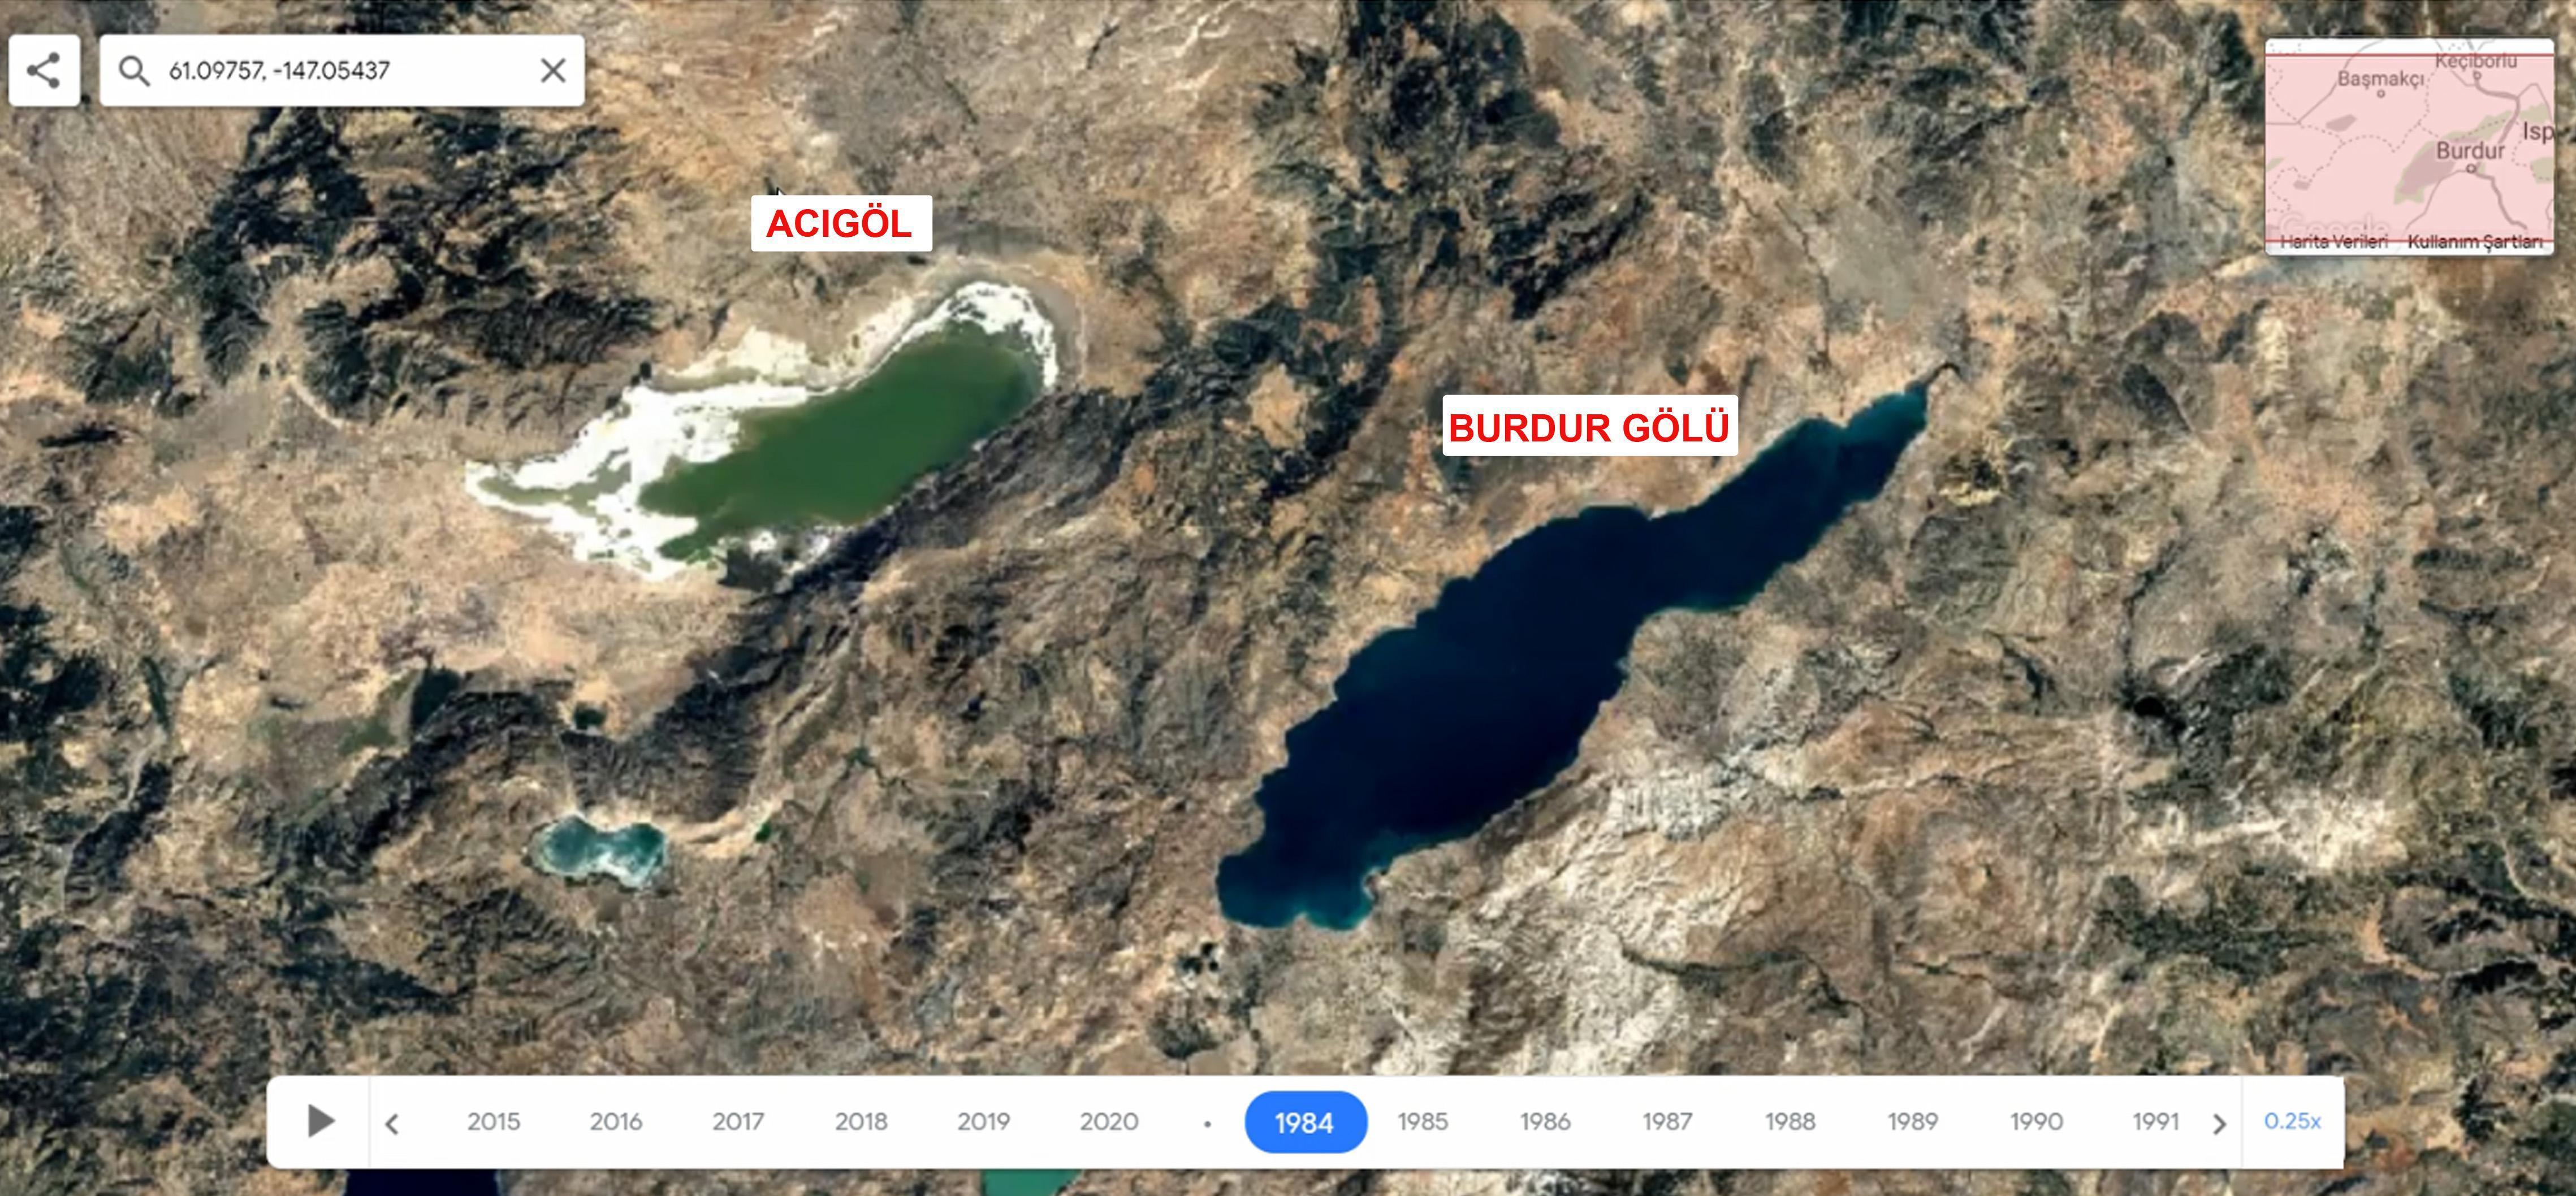 Göller Yöresinde kuraklık alarmı Uydu fotoğraflarında ortaya çıktı...